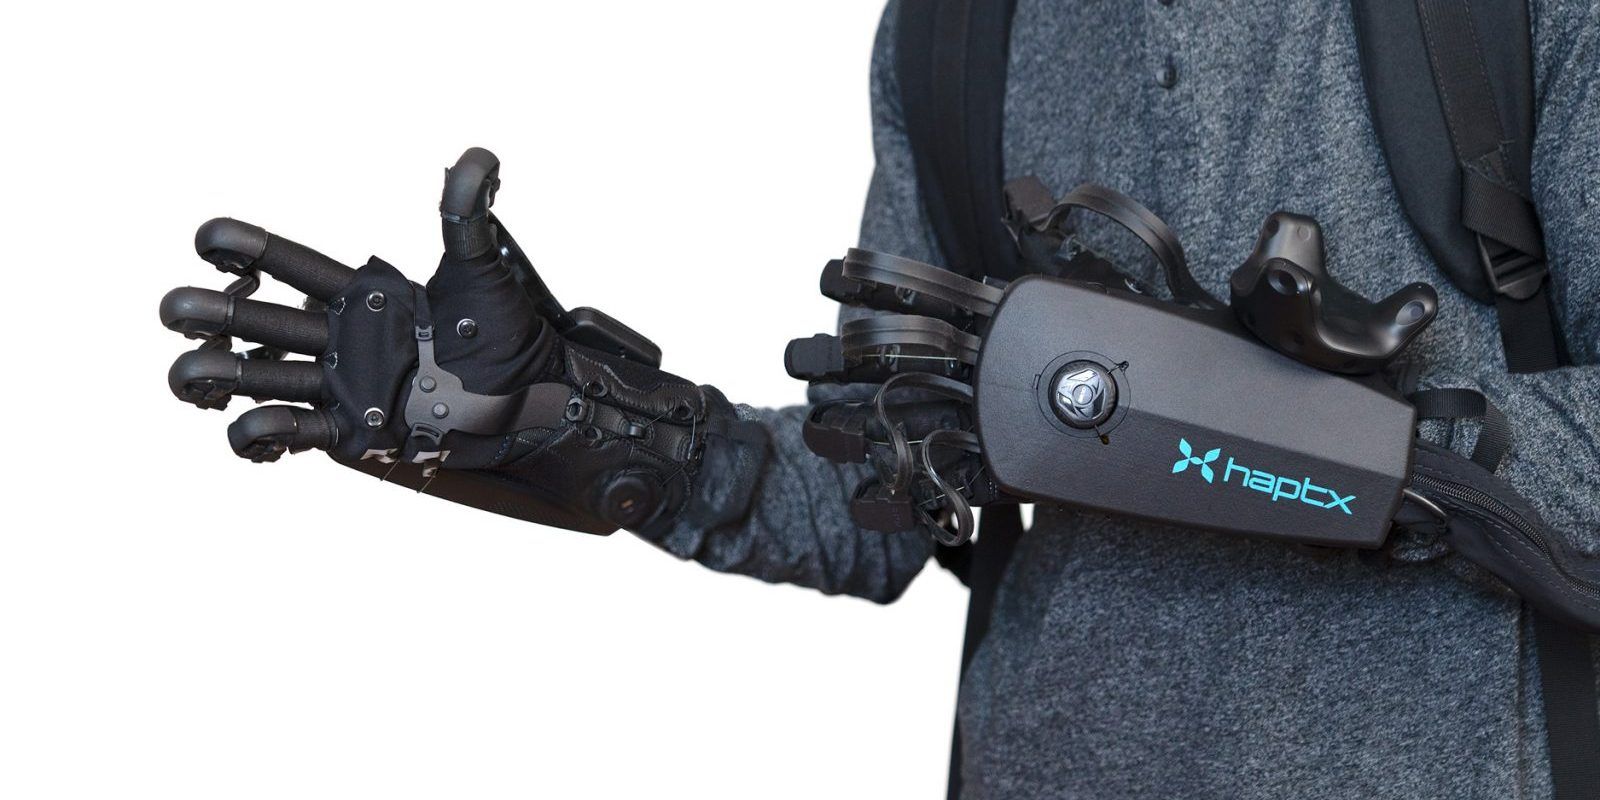 HaptX haptic gloves